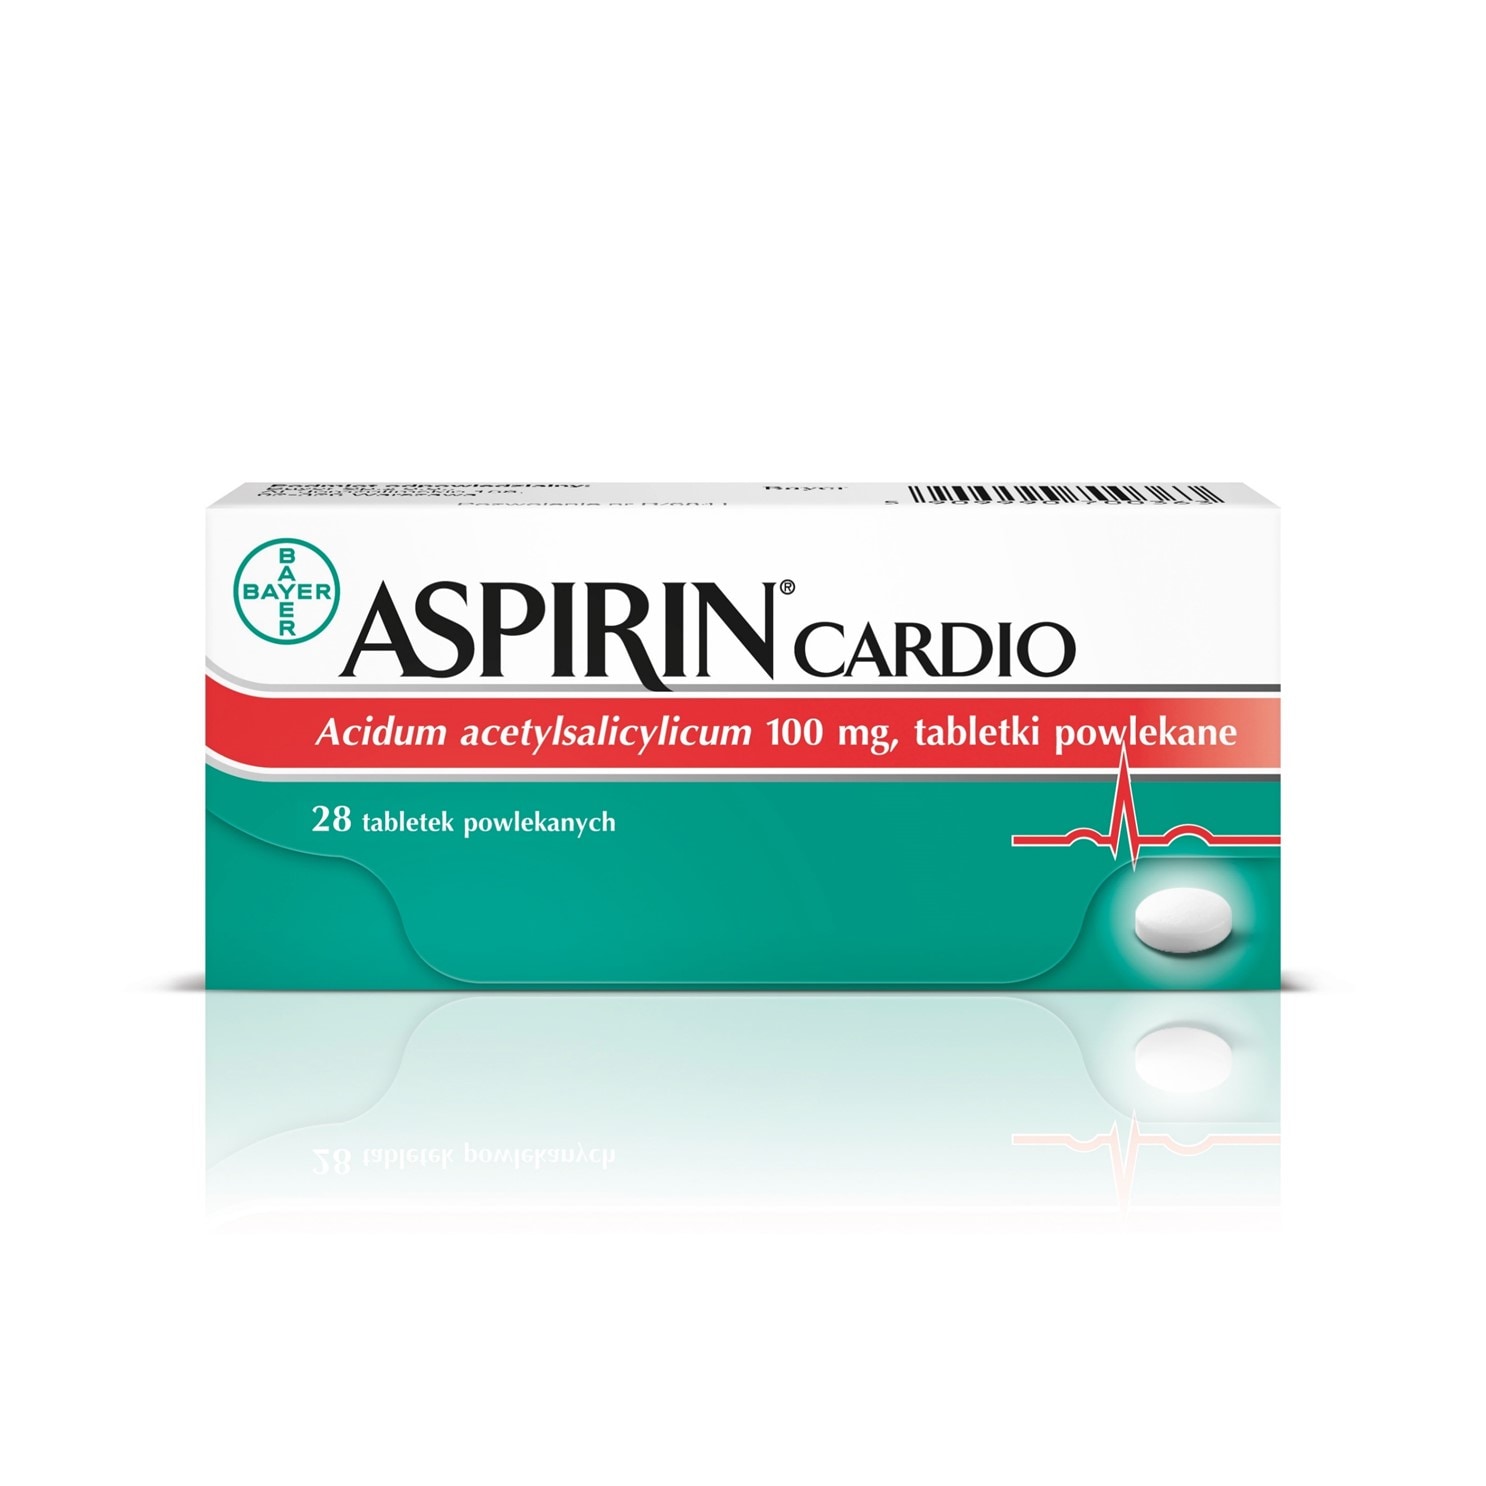 Aspirin Cardio by chronić twoje serce